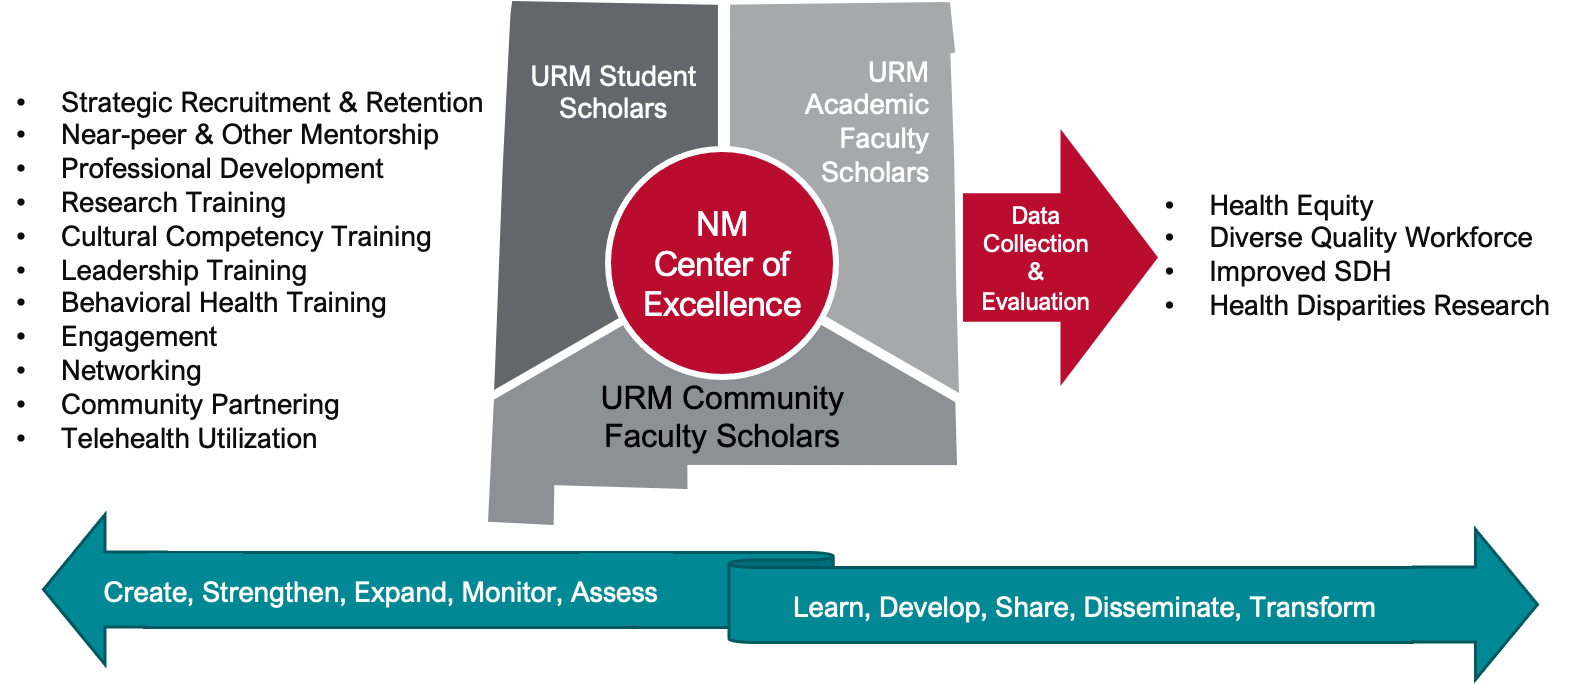 ein Diagramm, das die Funktionen und Beziehungen von URM und NM Center of Excellence zeigt